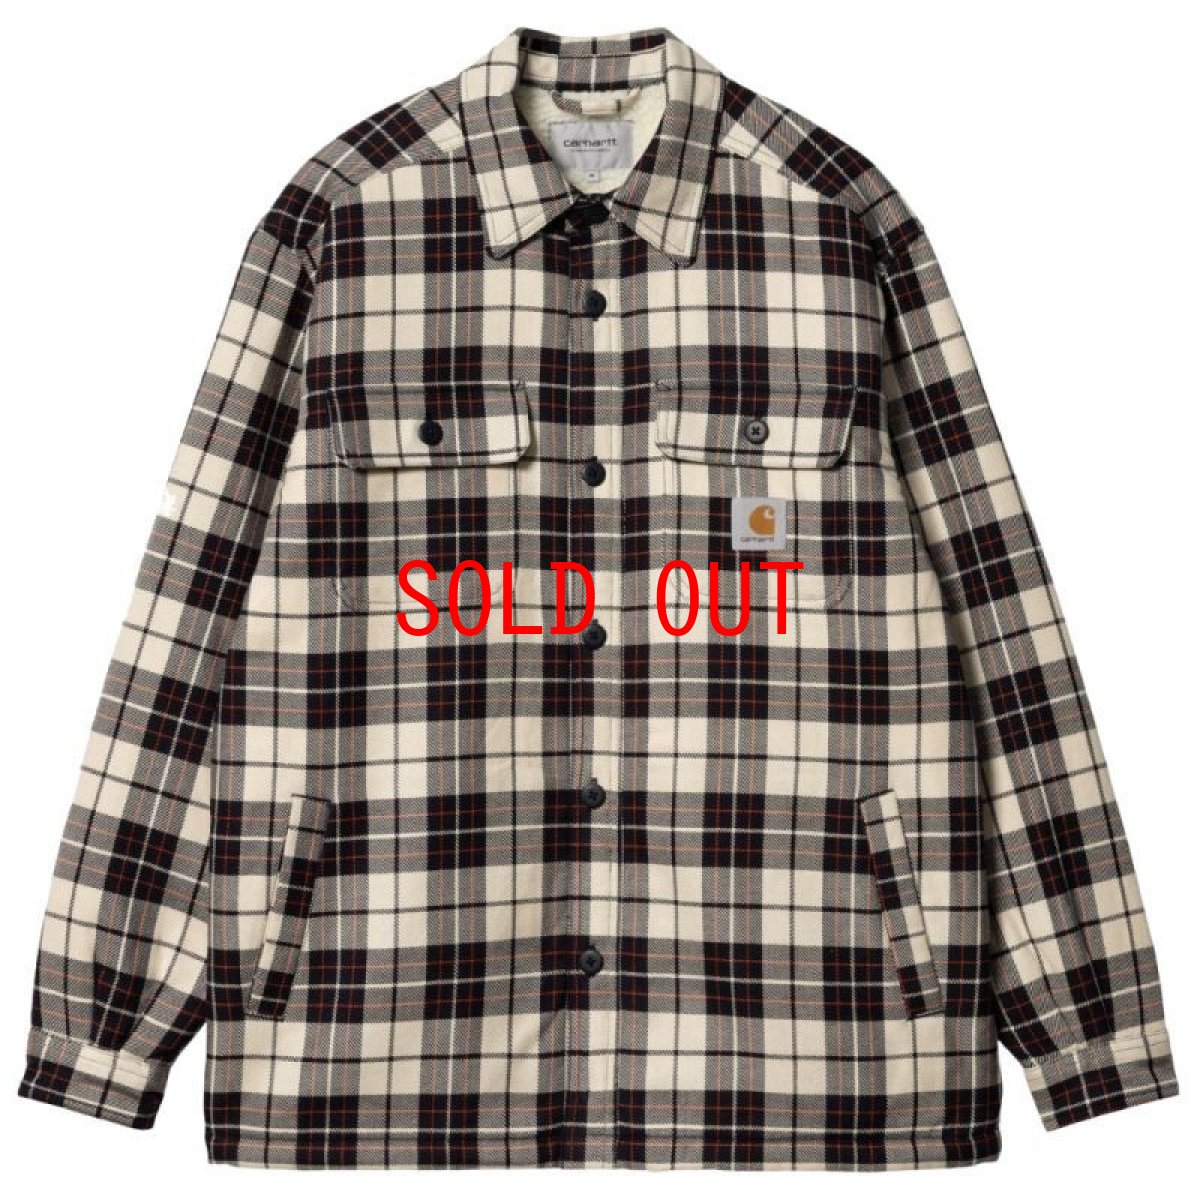 画像1: Arden Check Flannel Shirt Jacket BEG フランネル チェック 長袖 シャツ ジャケット (1)